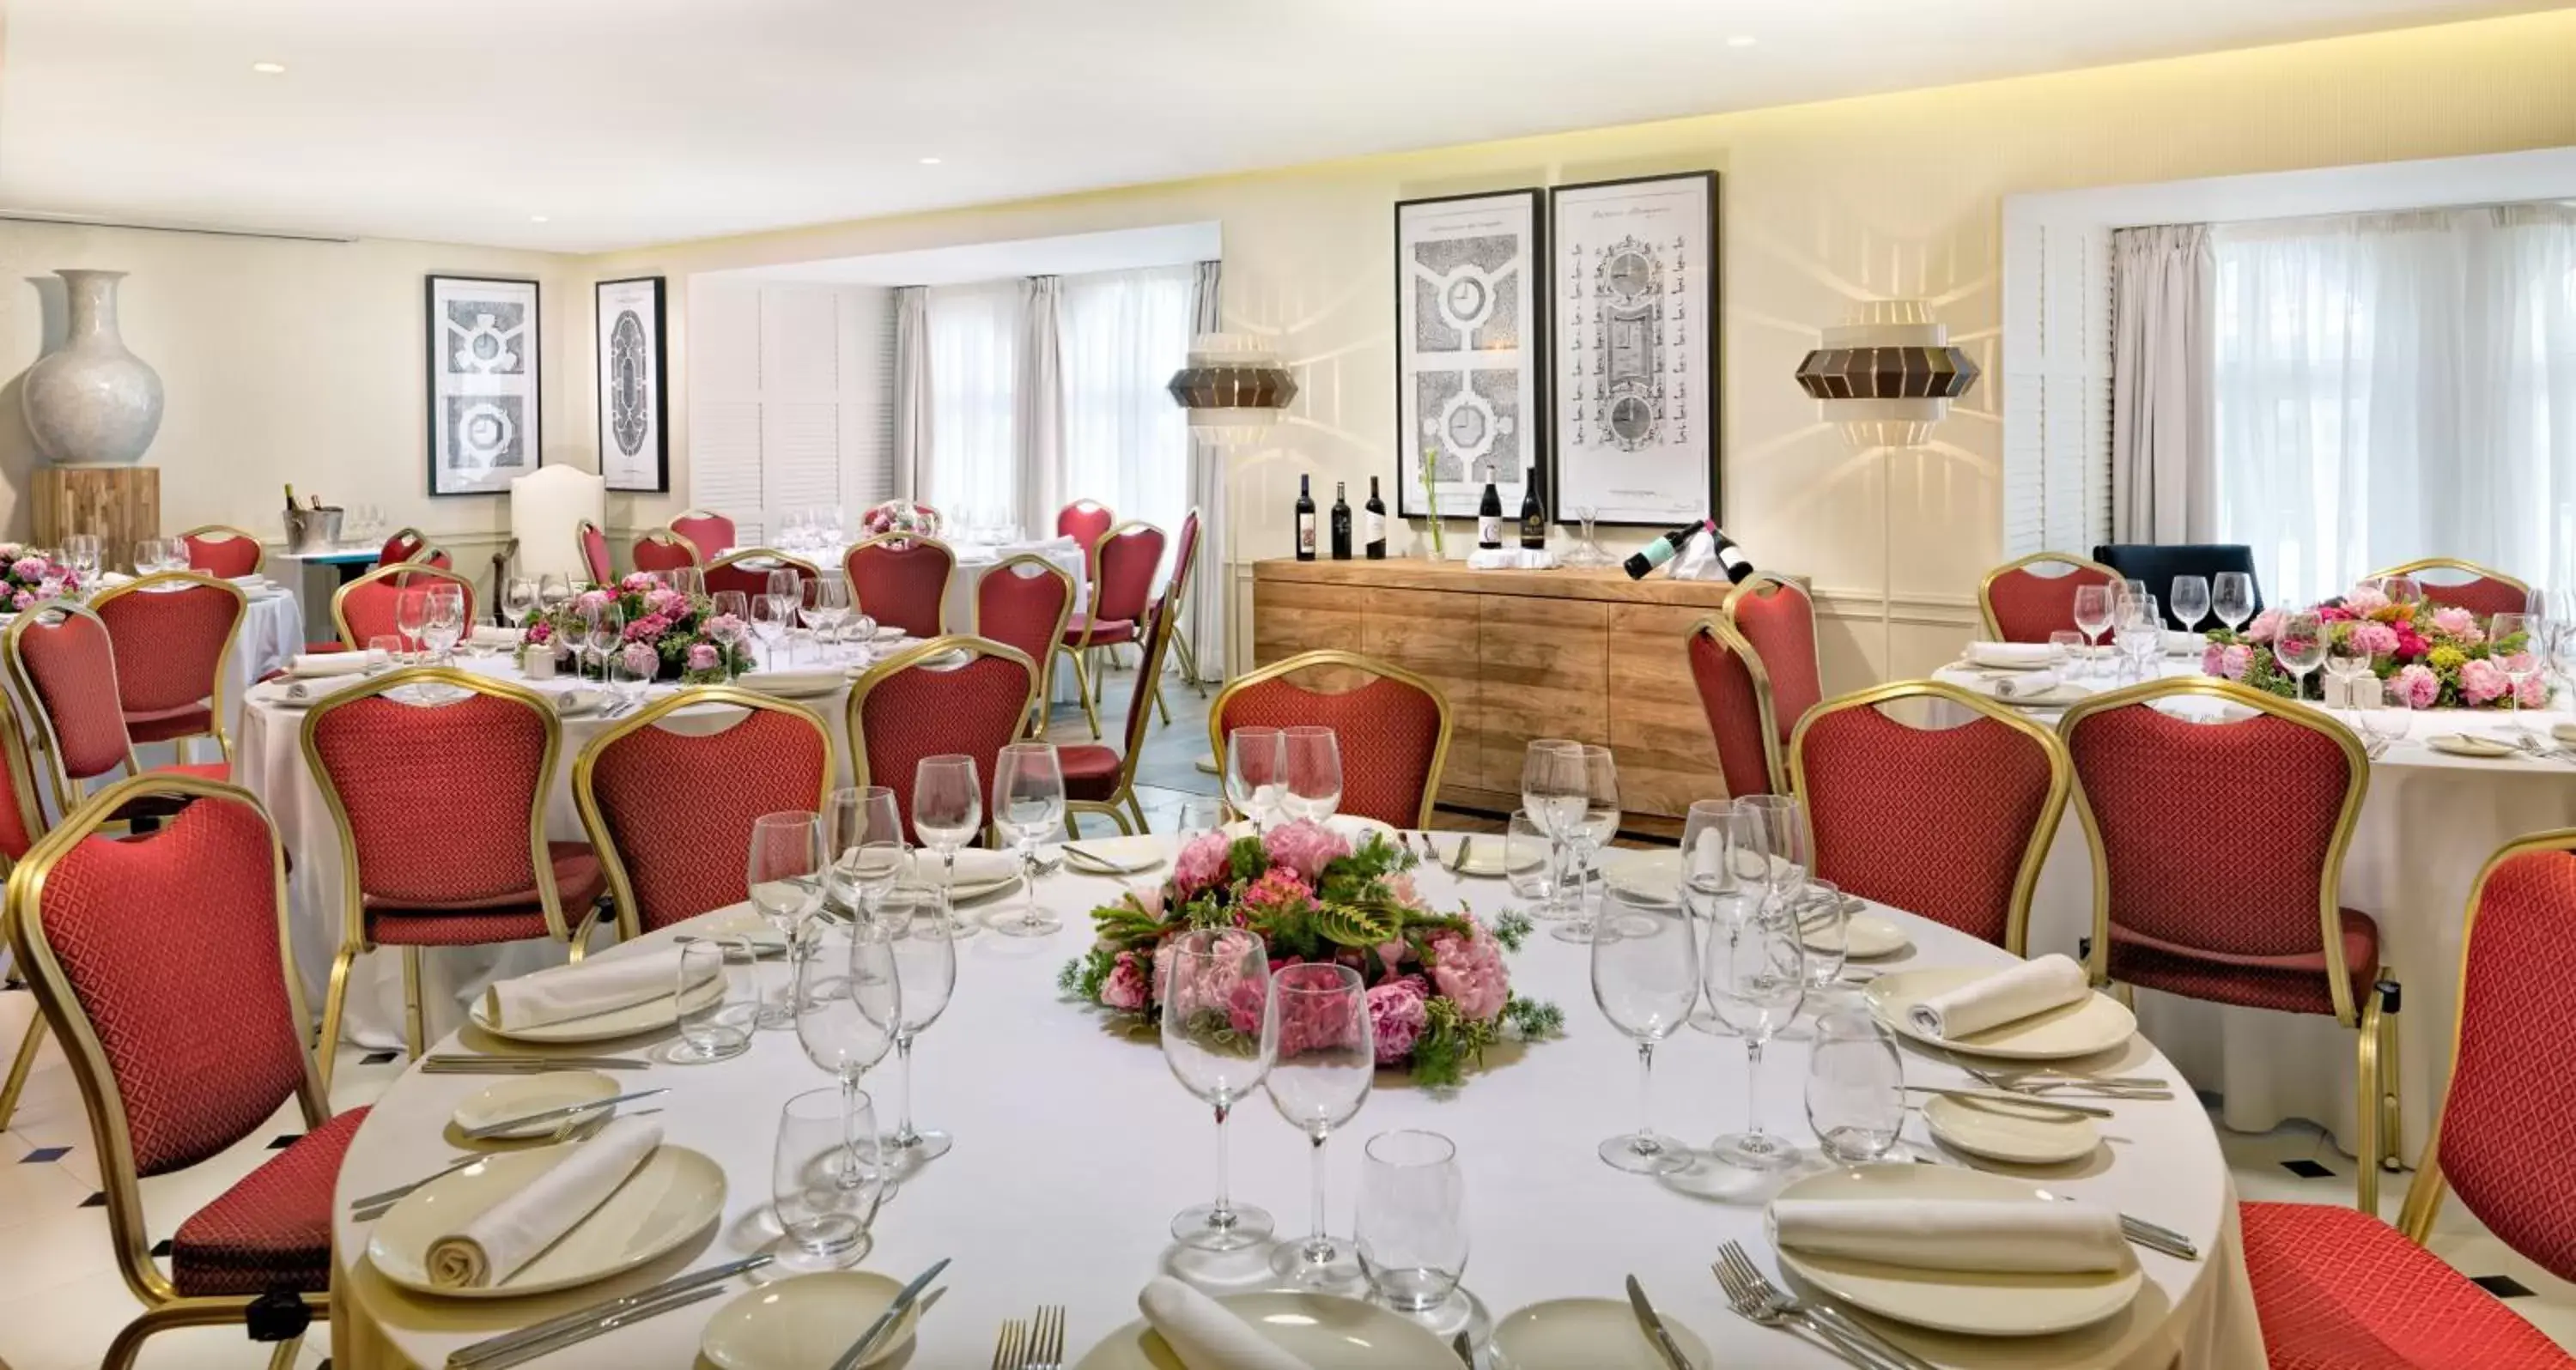 Banquet/Function facilities, Restaurant/Places to Eat in H10 Duque de Loule